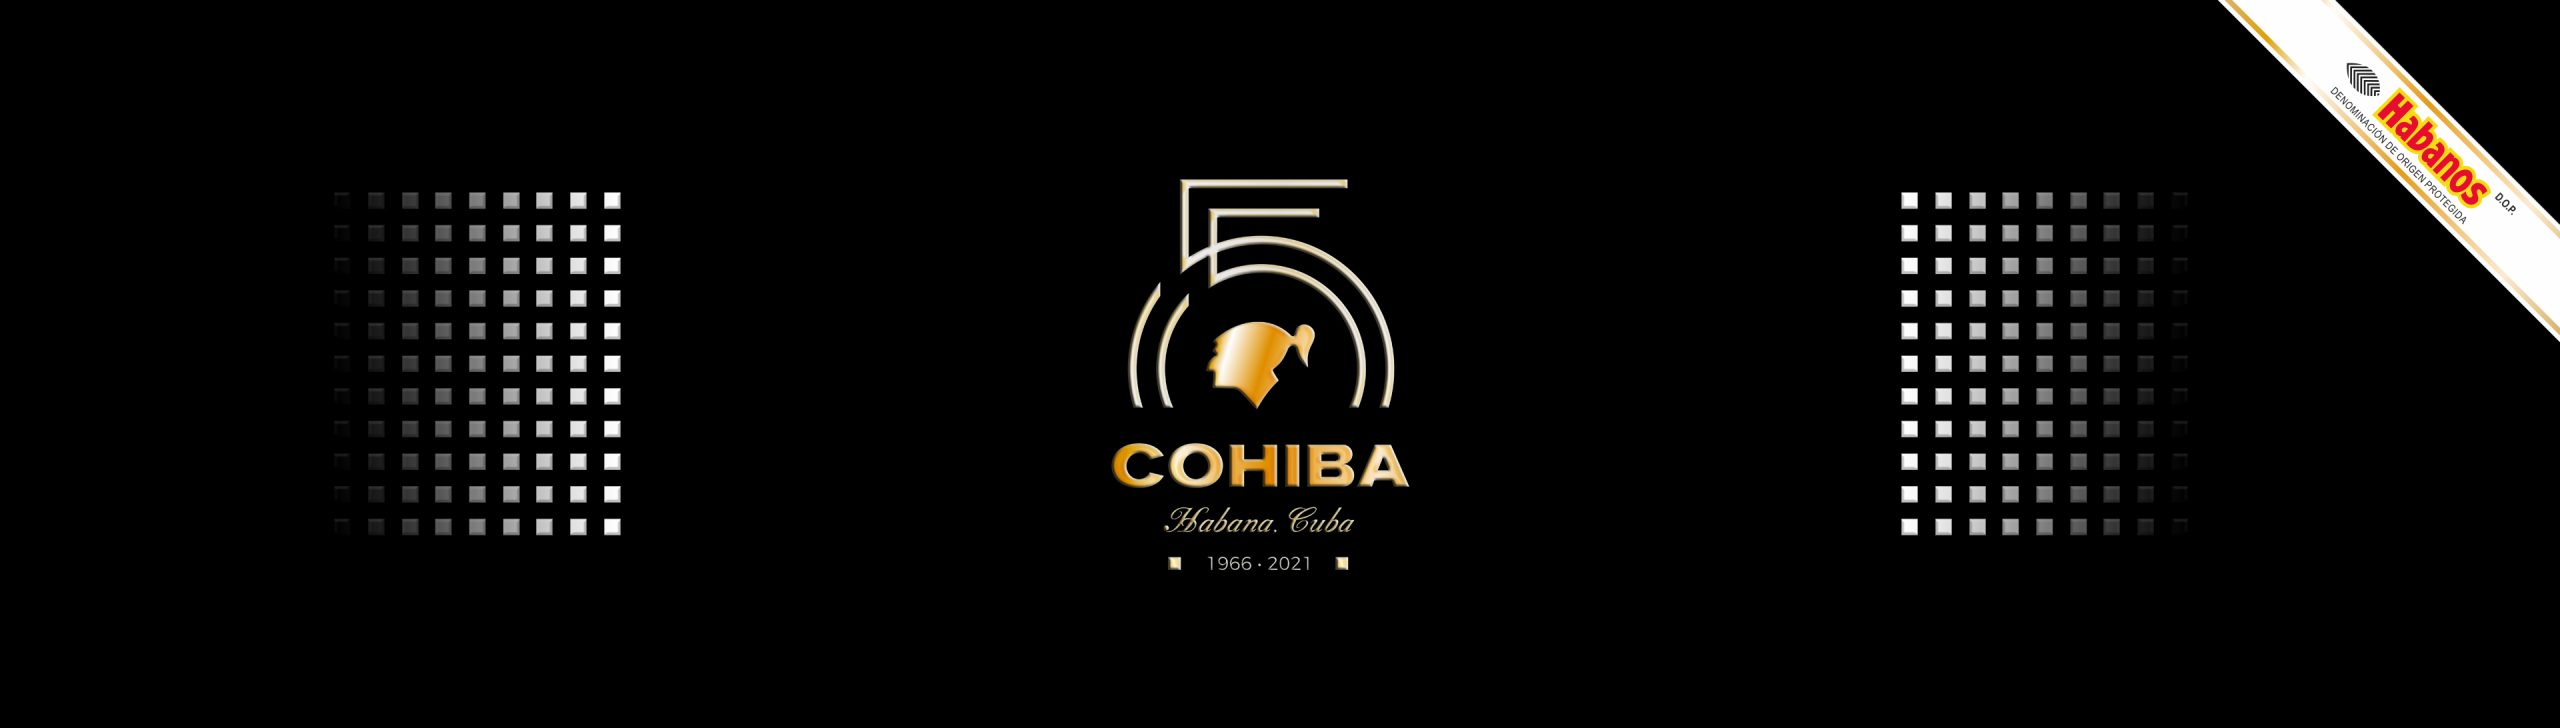 Cohiba’s 55th Anniversary Celebration